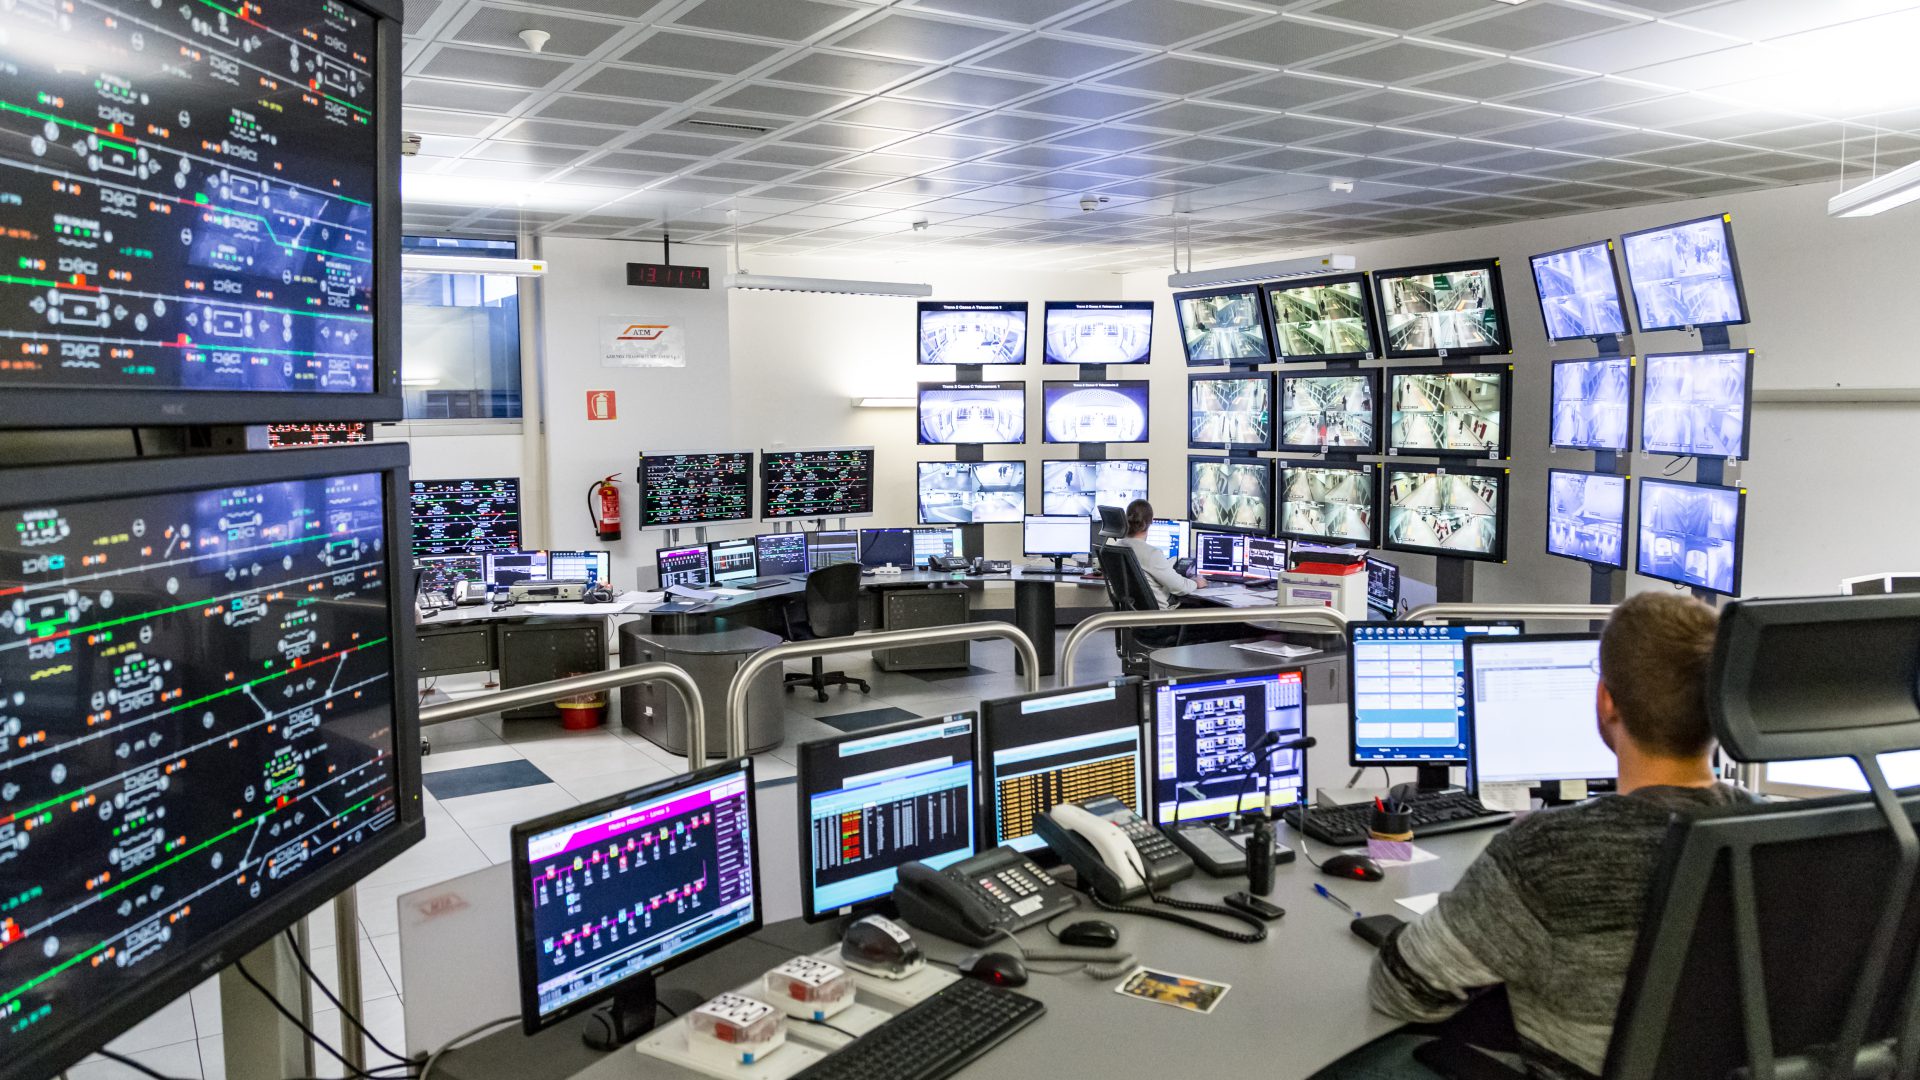 M5 control and operative room Atm Parigi